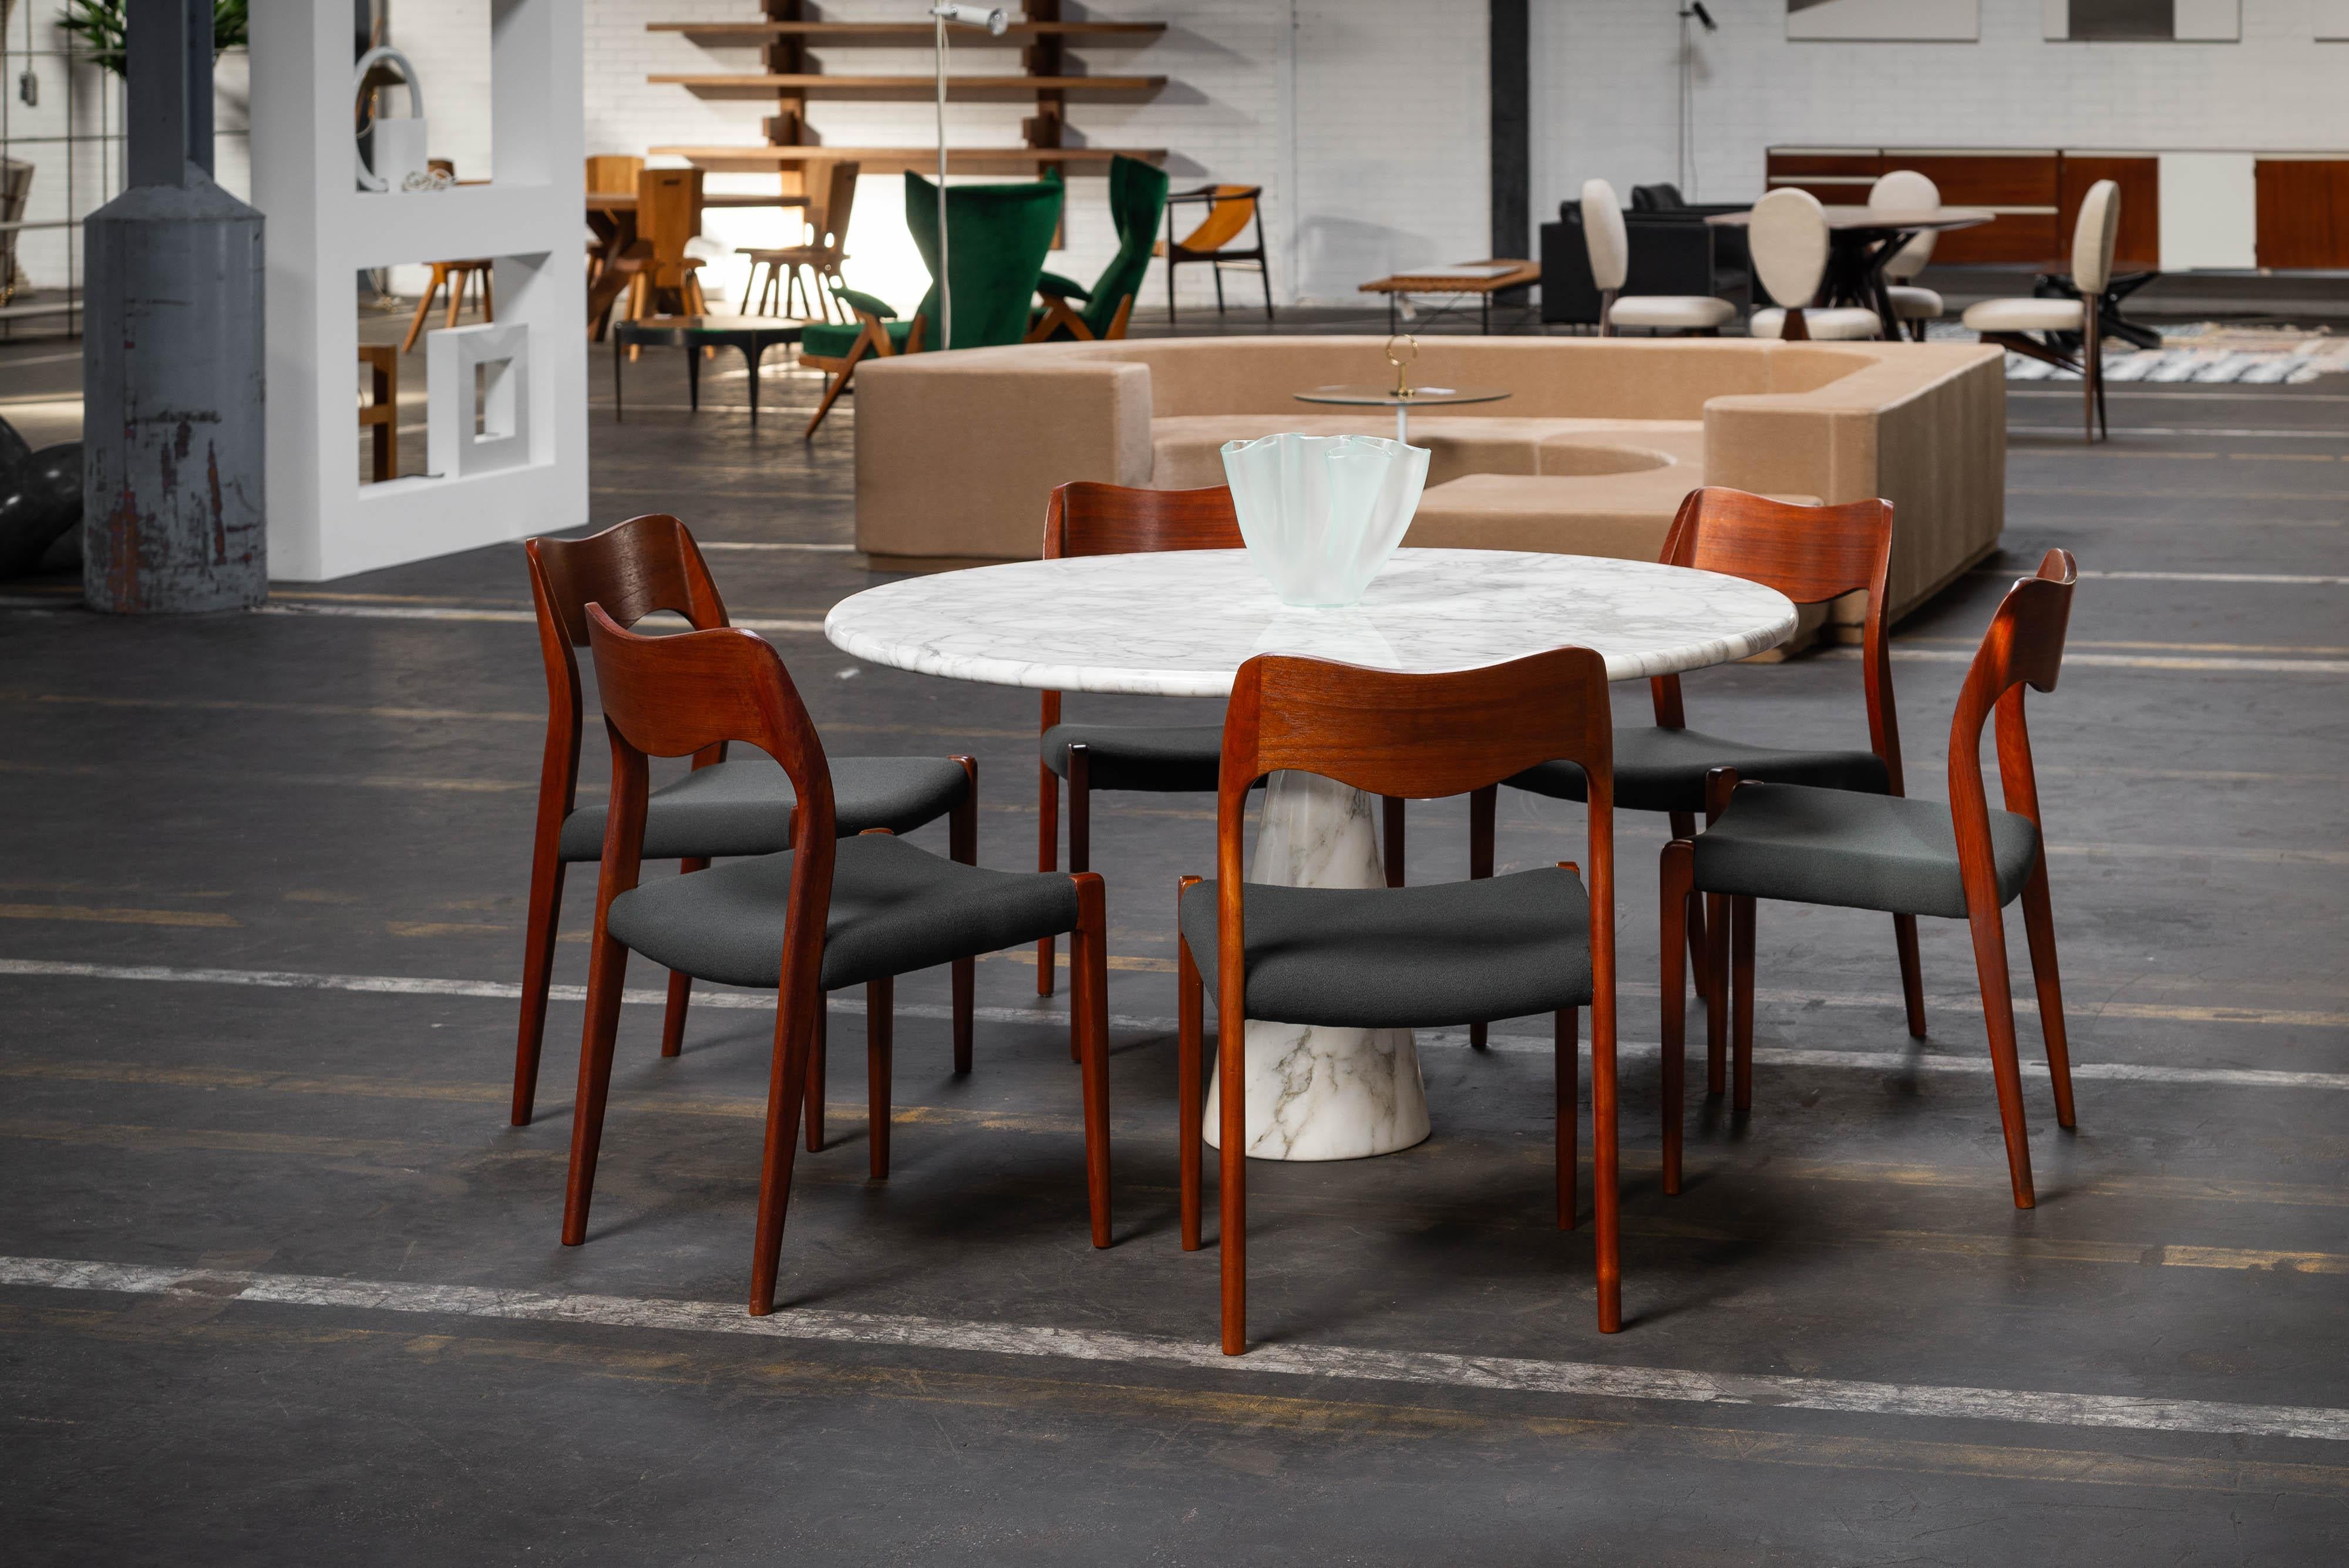 Exceptionnel ensemble de 12 chaises Model 71 conçues par Niels Otto Møller et fabriquées par J.L.A. Møller Møbelfabrik au Danemark en 1951. Ces chaises ne sont pas seulement belles, elles sont aussi très pratiques. Elles sont fabriquées en bois de